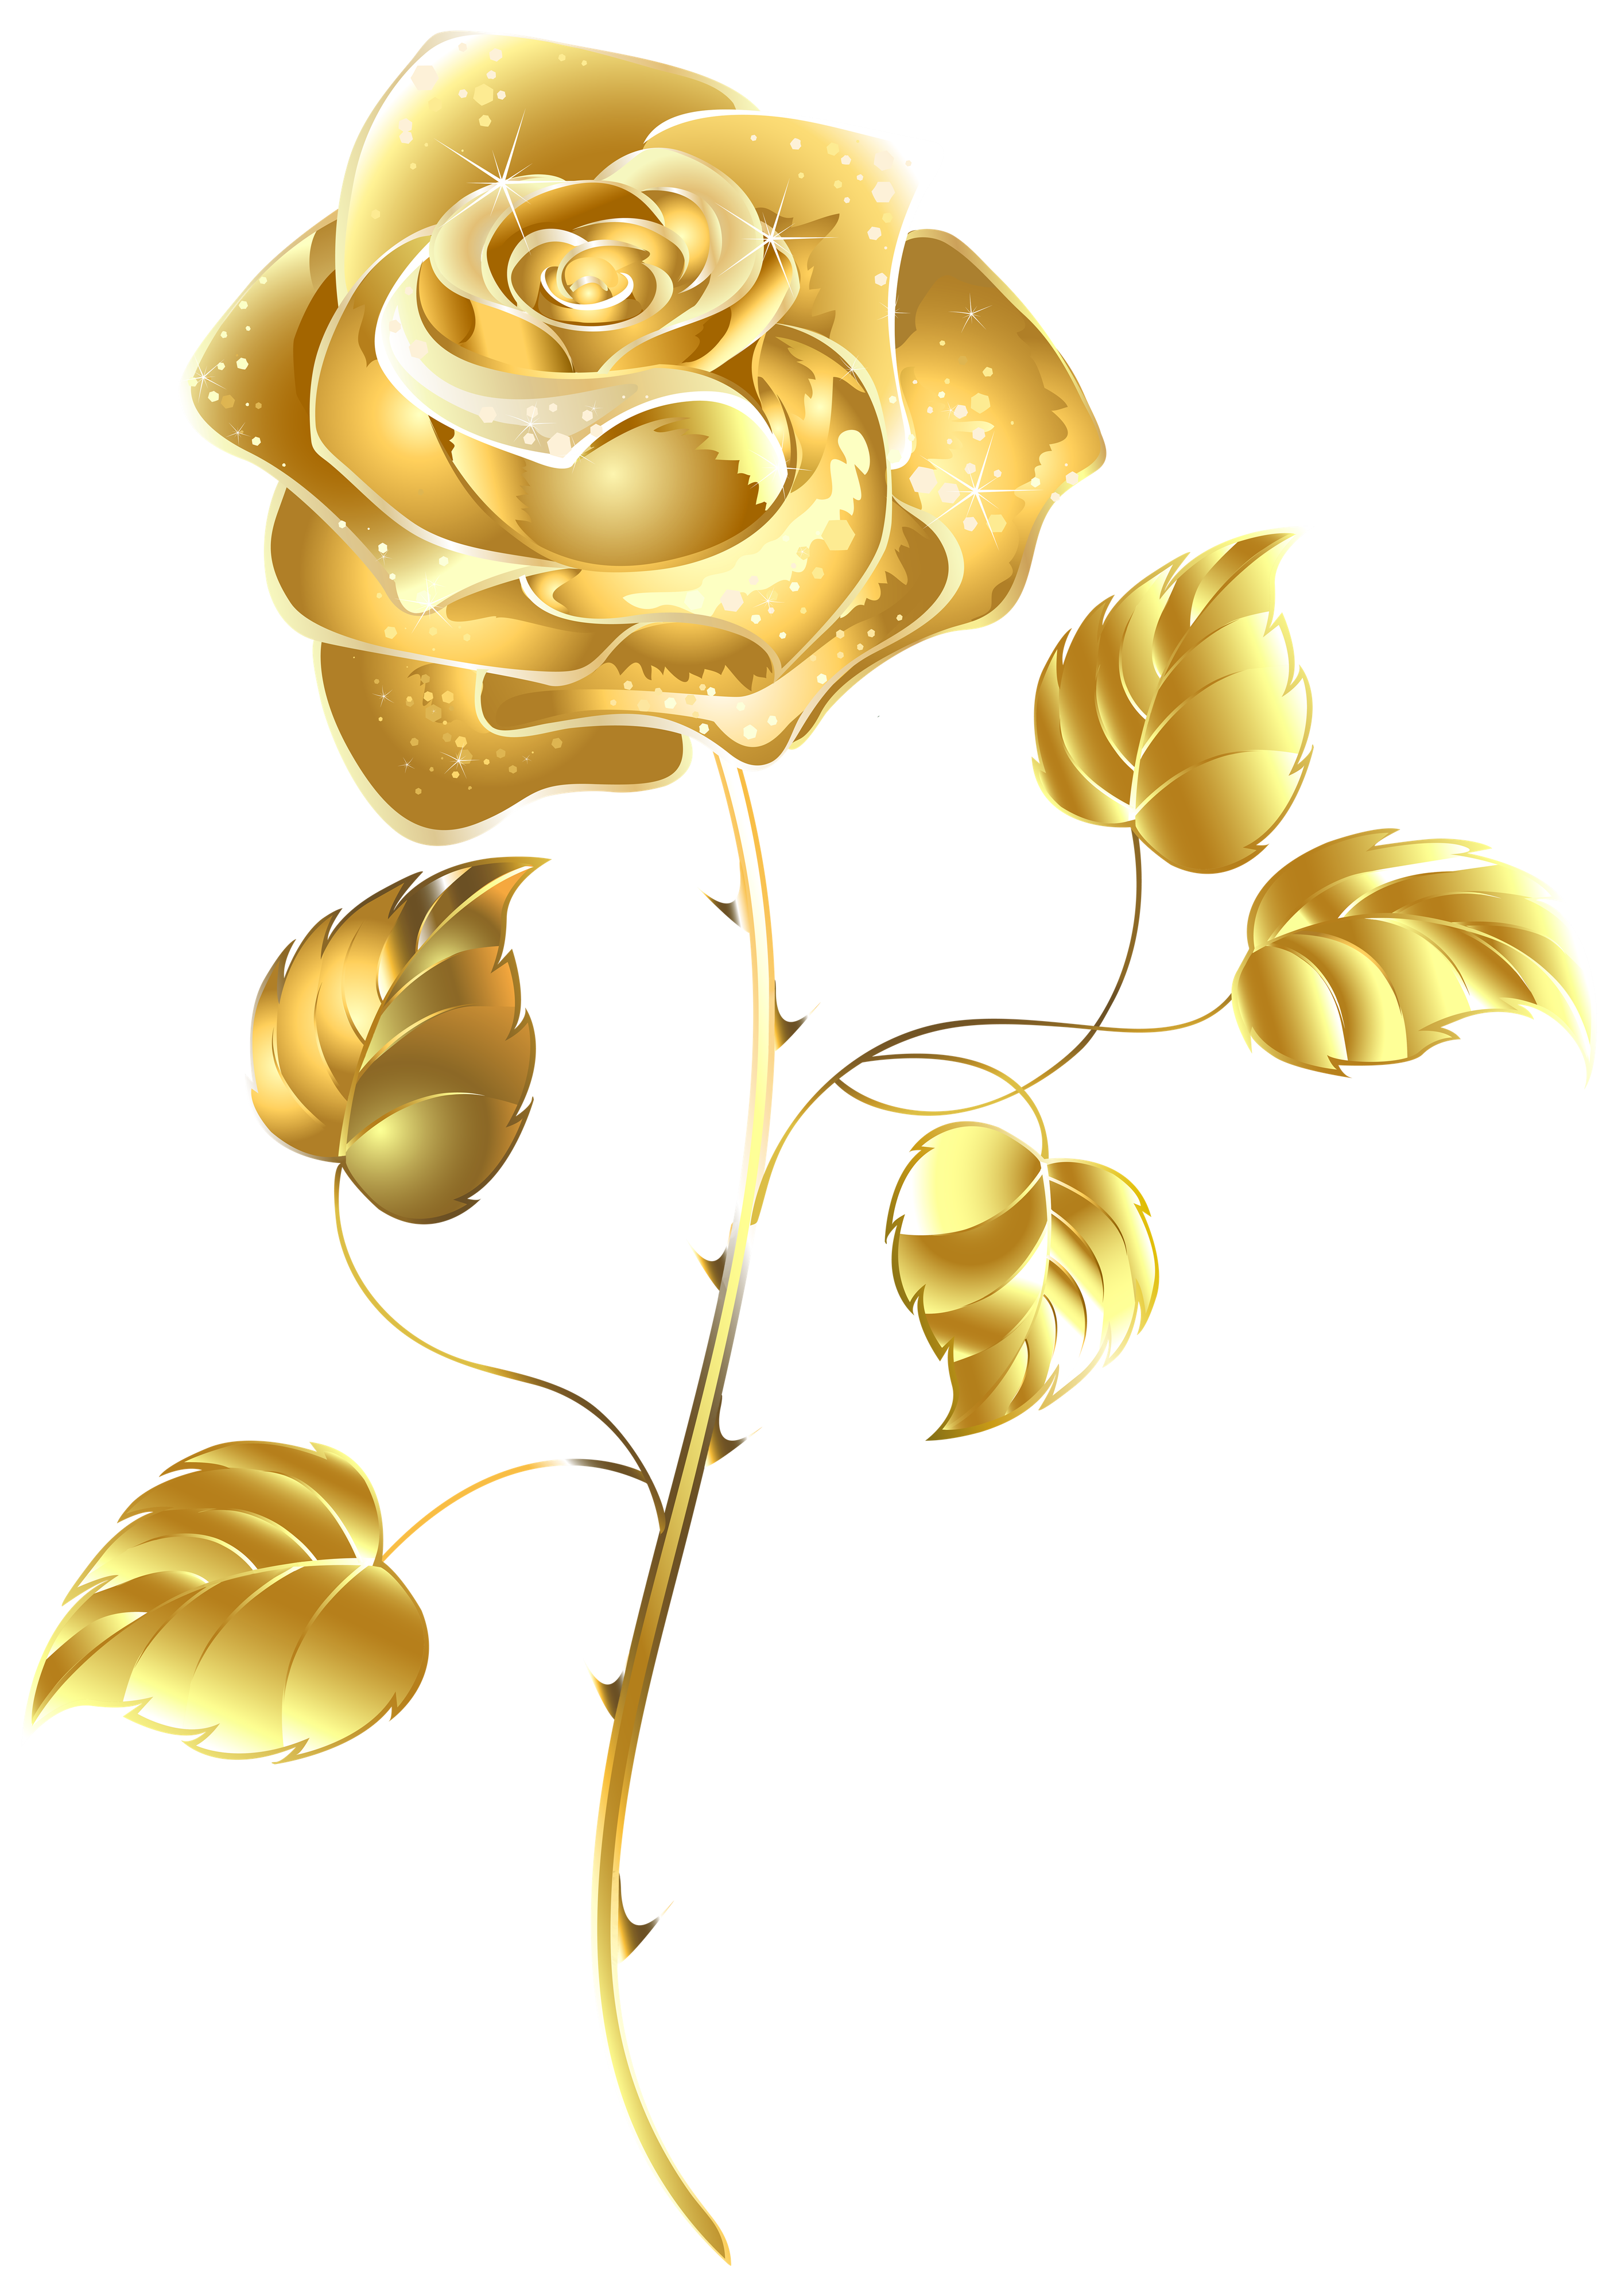 Golden Rose Transparent Image